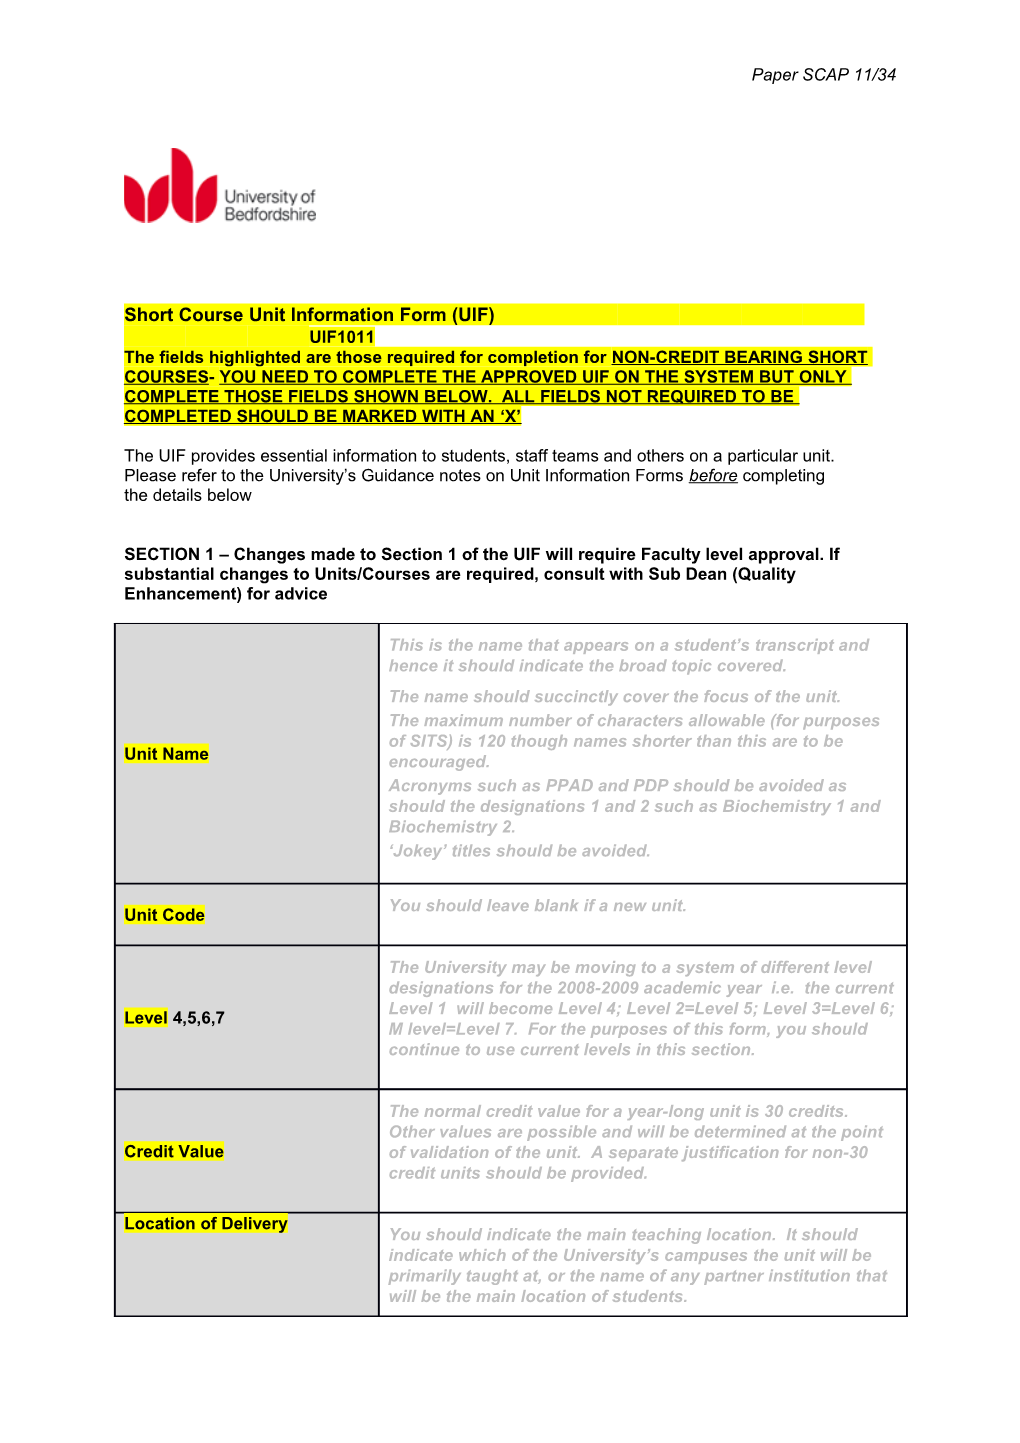 Short Course Unit Information Form (UIF) UIF1011